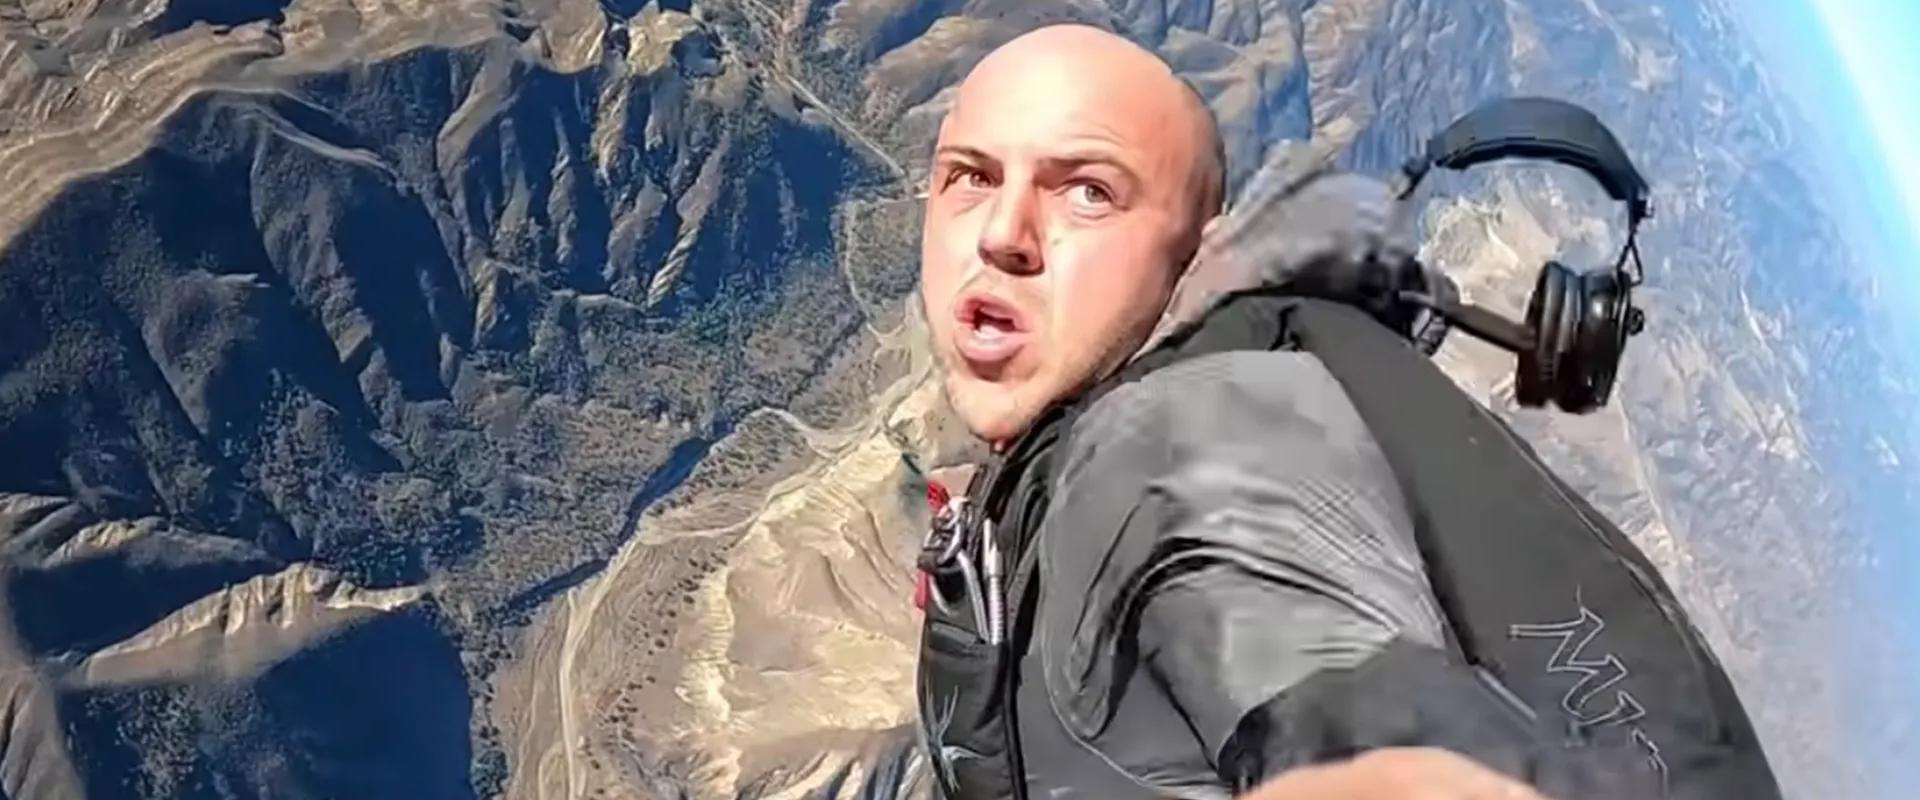 Megrendezte a saját repülőgép balesetét, börtönbe megy a youtuber